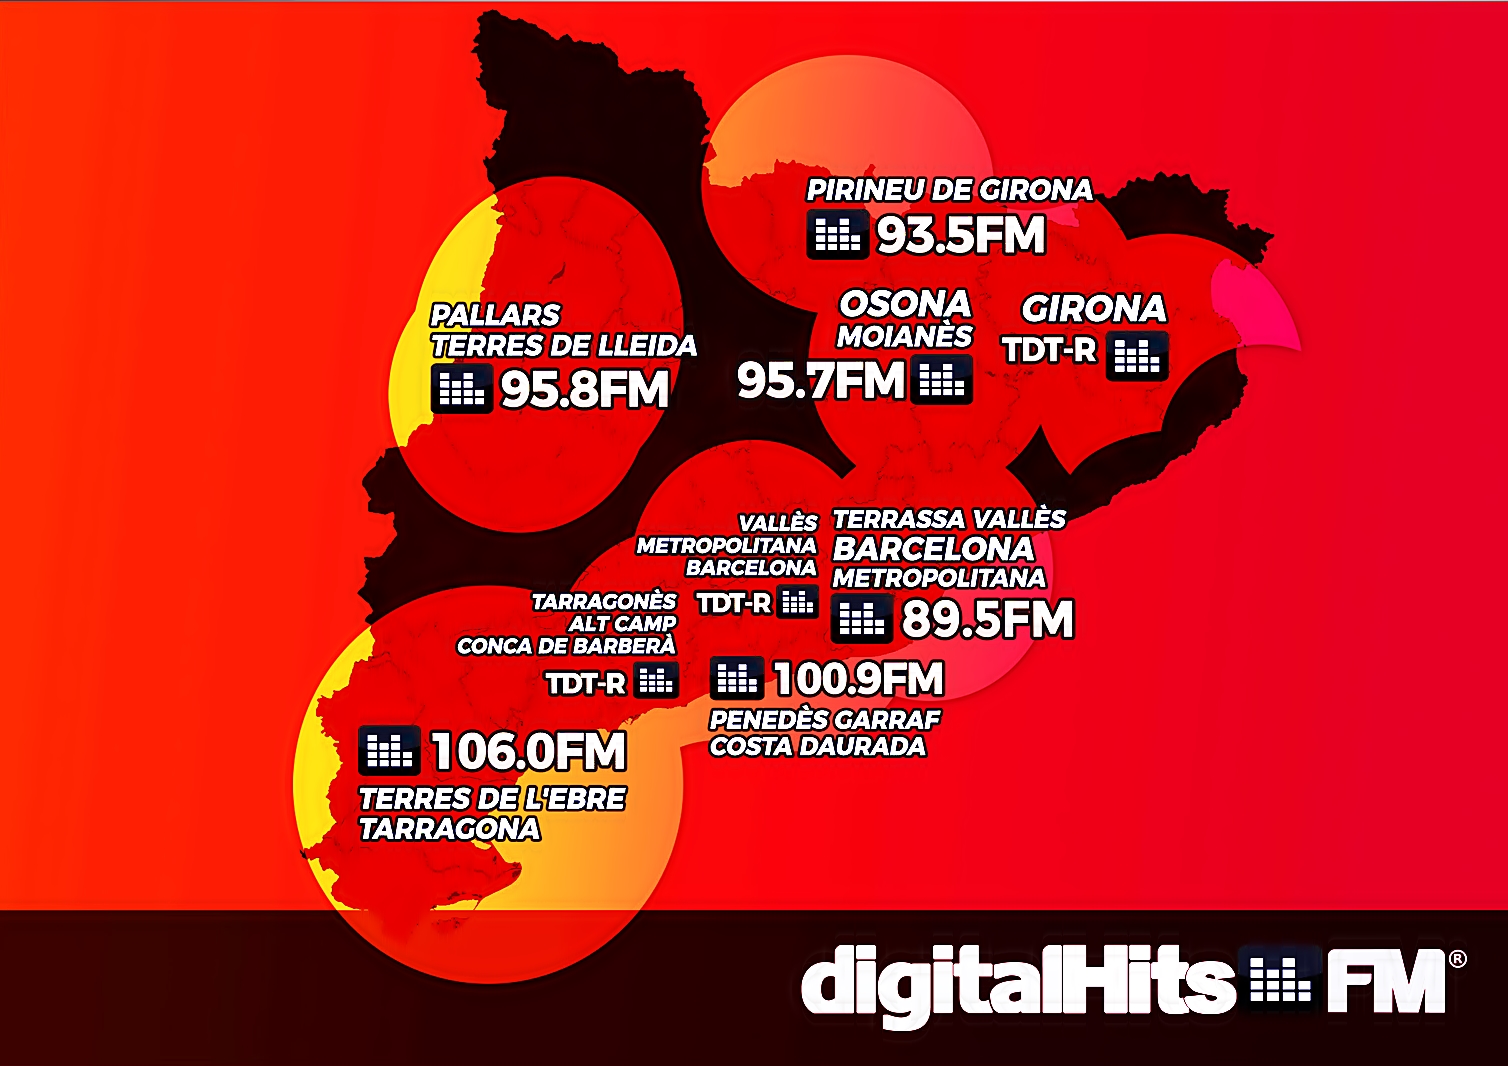 Digital Hits FM, Osona i Moianès 95.7 FM